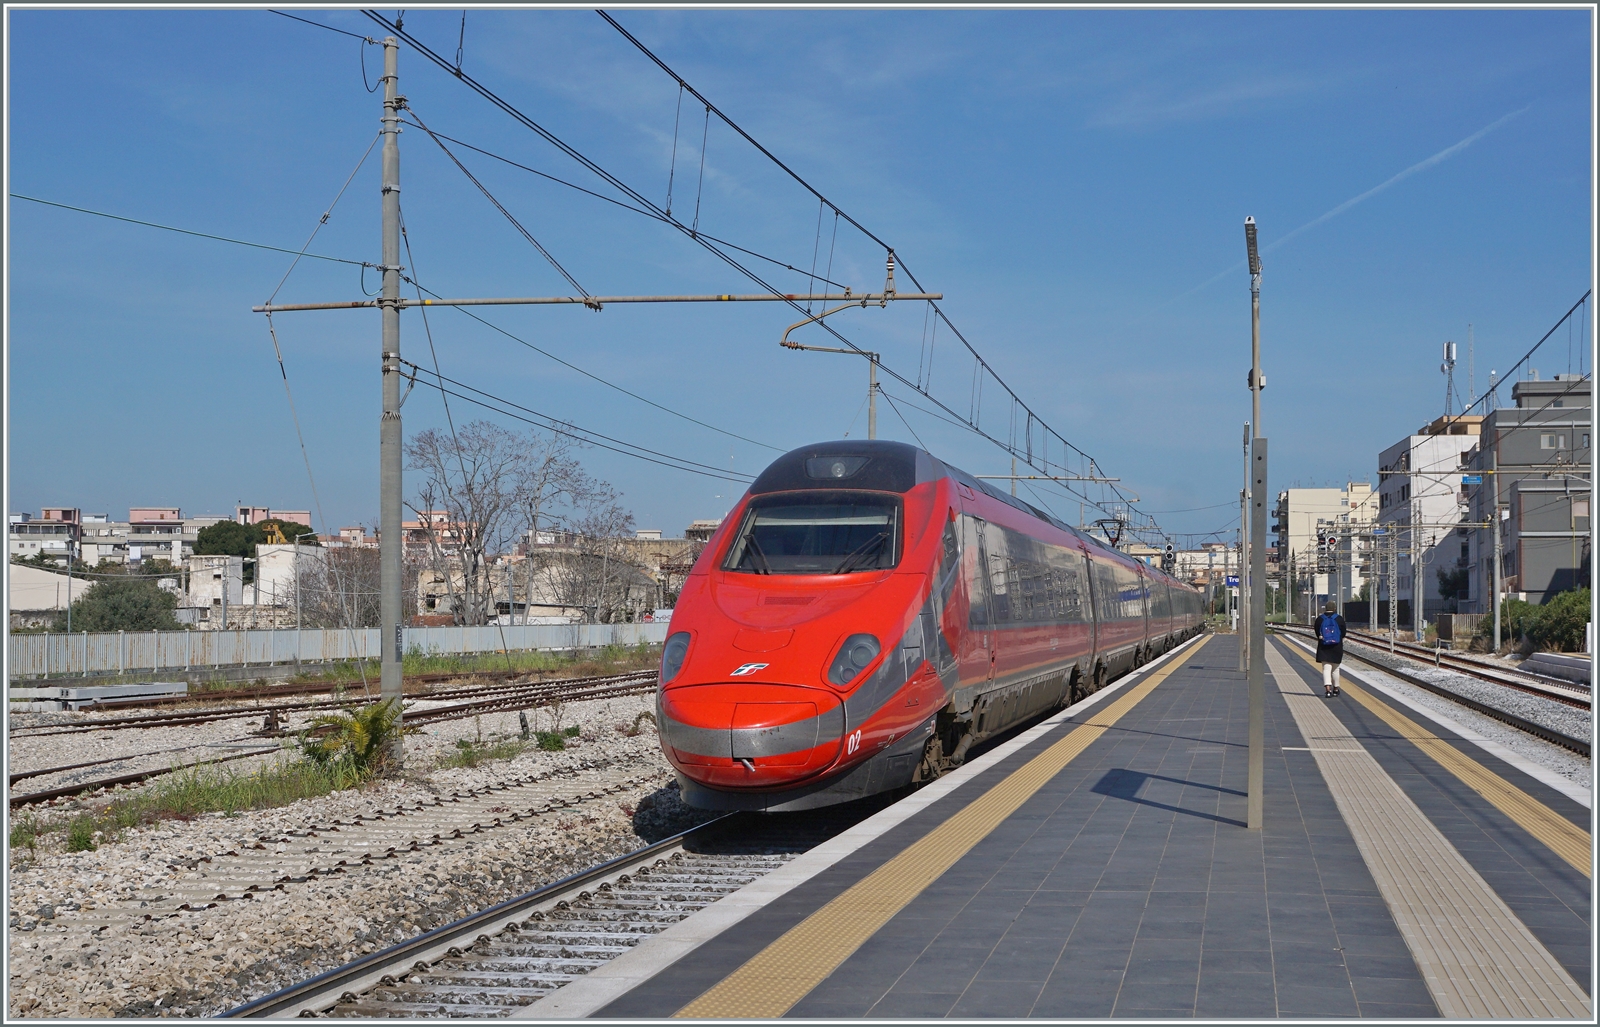 Der FS Trenitalia ETR 600 002 in neuer Frecciarossa Lackierung und ein weiterer ETR 600 sind als FR 8306 von Bari (ab 8:46) nach Roma Termini an (12:55) unterwegs und fahren mit recht hoher Geschwindigkeit durch den Bahnhof von Trani. 

22. April 2023